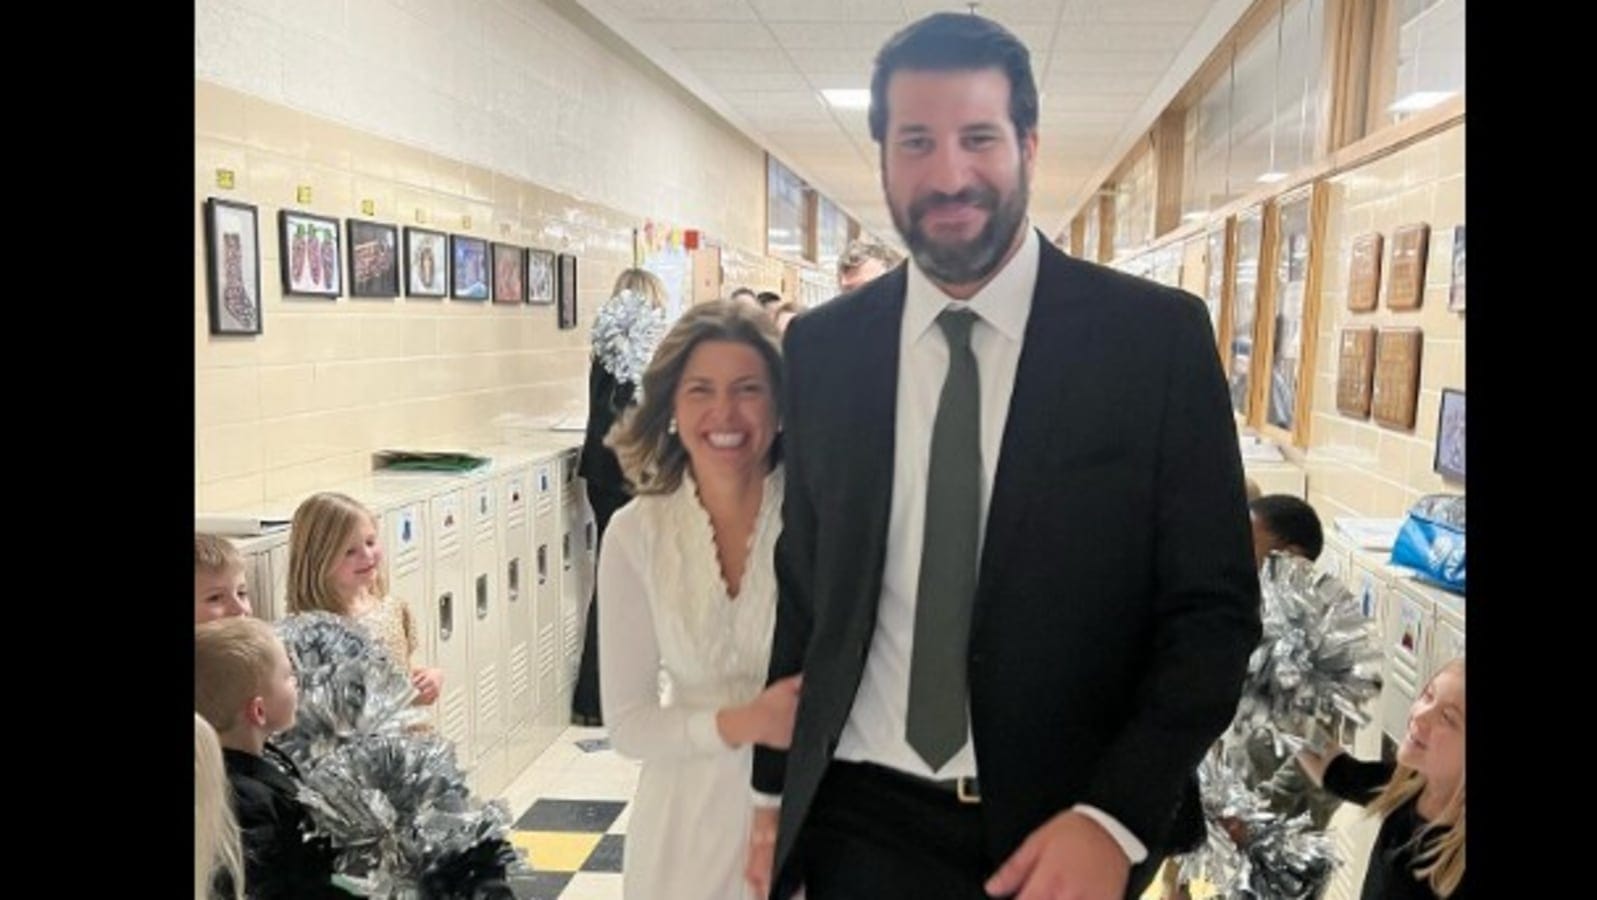 US kindergarten teacher surprises students by getting married in school